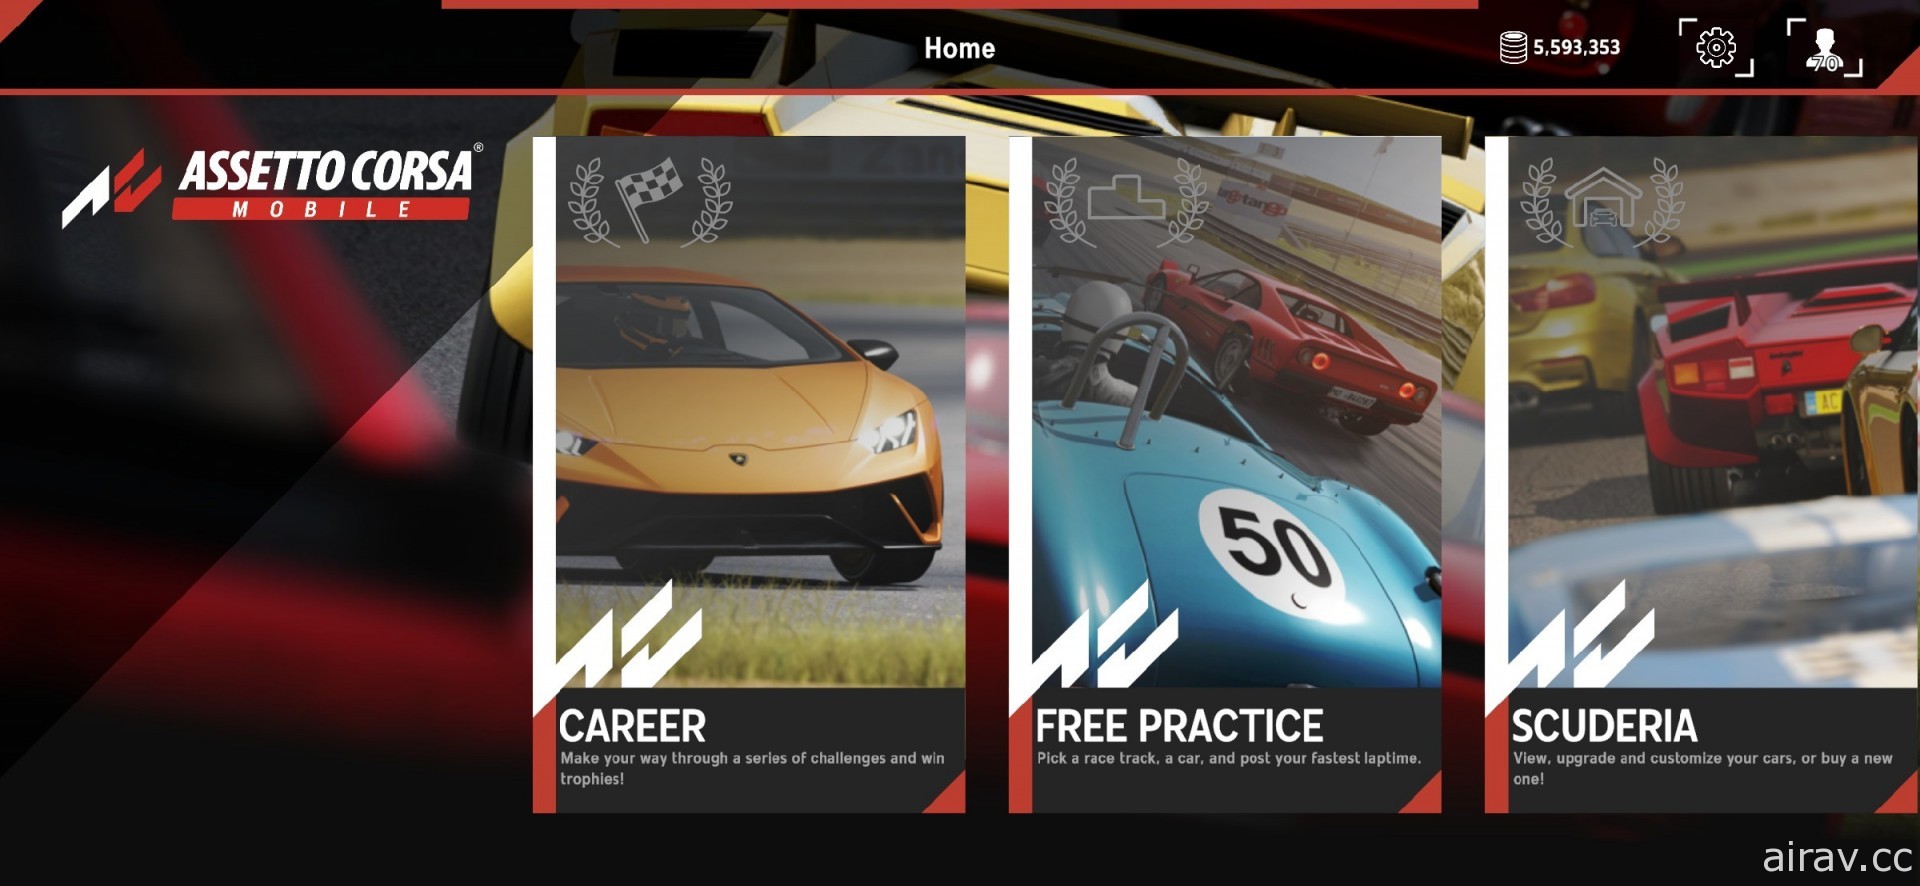 賽車模擬遊戲《出賽準備》行動版正式登上 App Store 隨時隨地享受競速樂趣